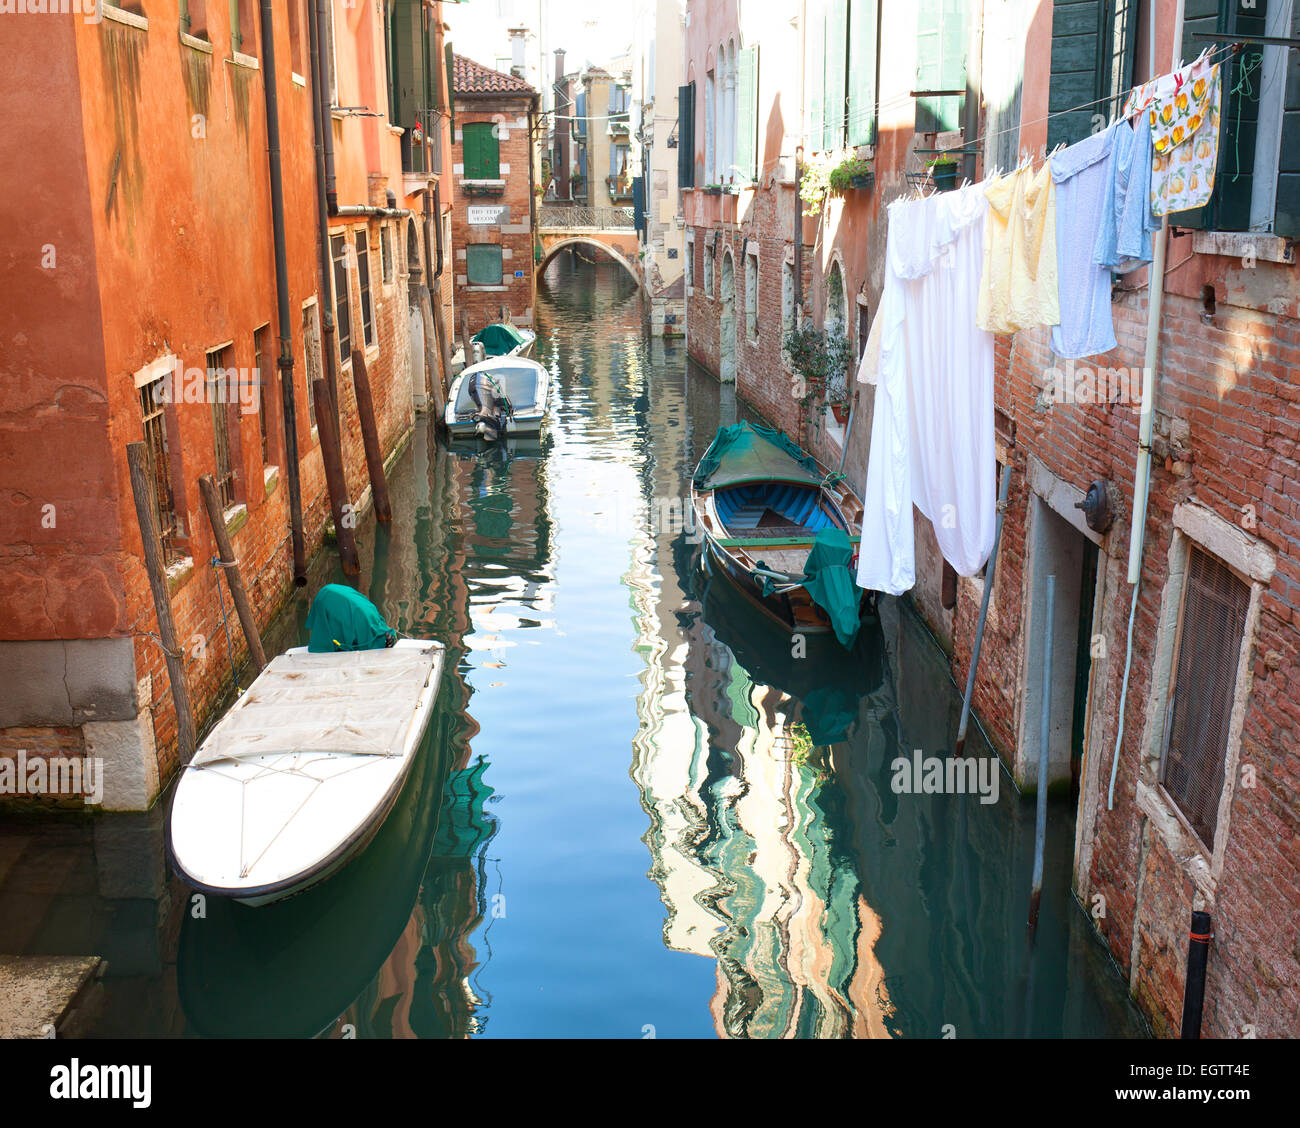 Canale veneziano con barche e vestiti appesi ad asciugare, Venezia, Italia. Foto Stock